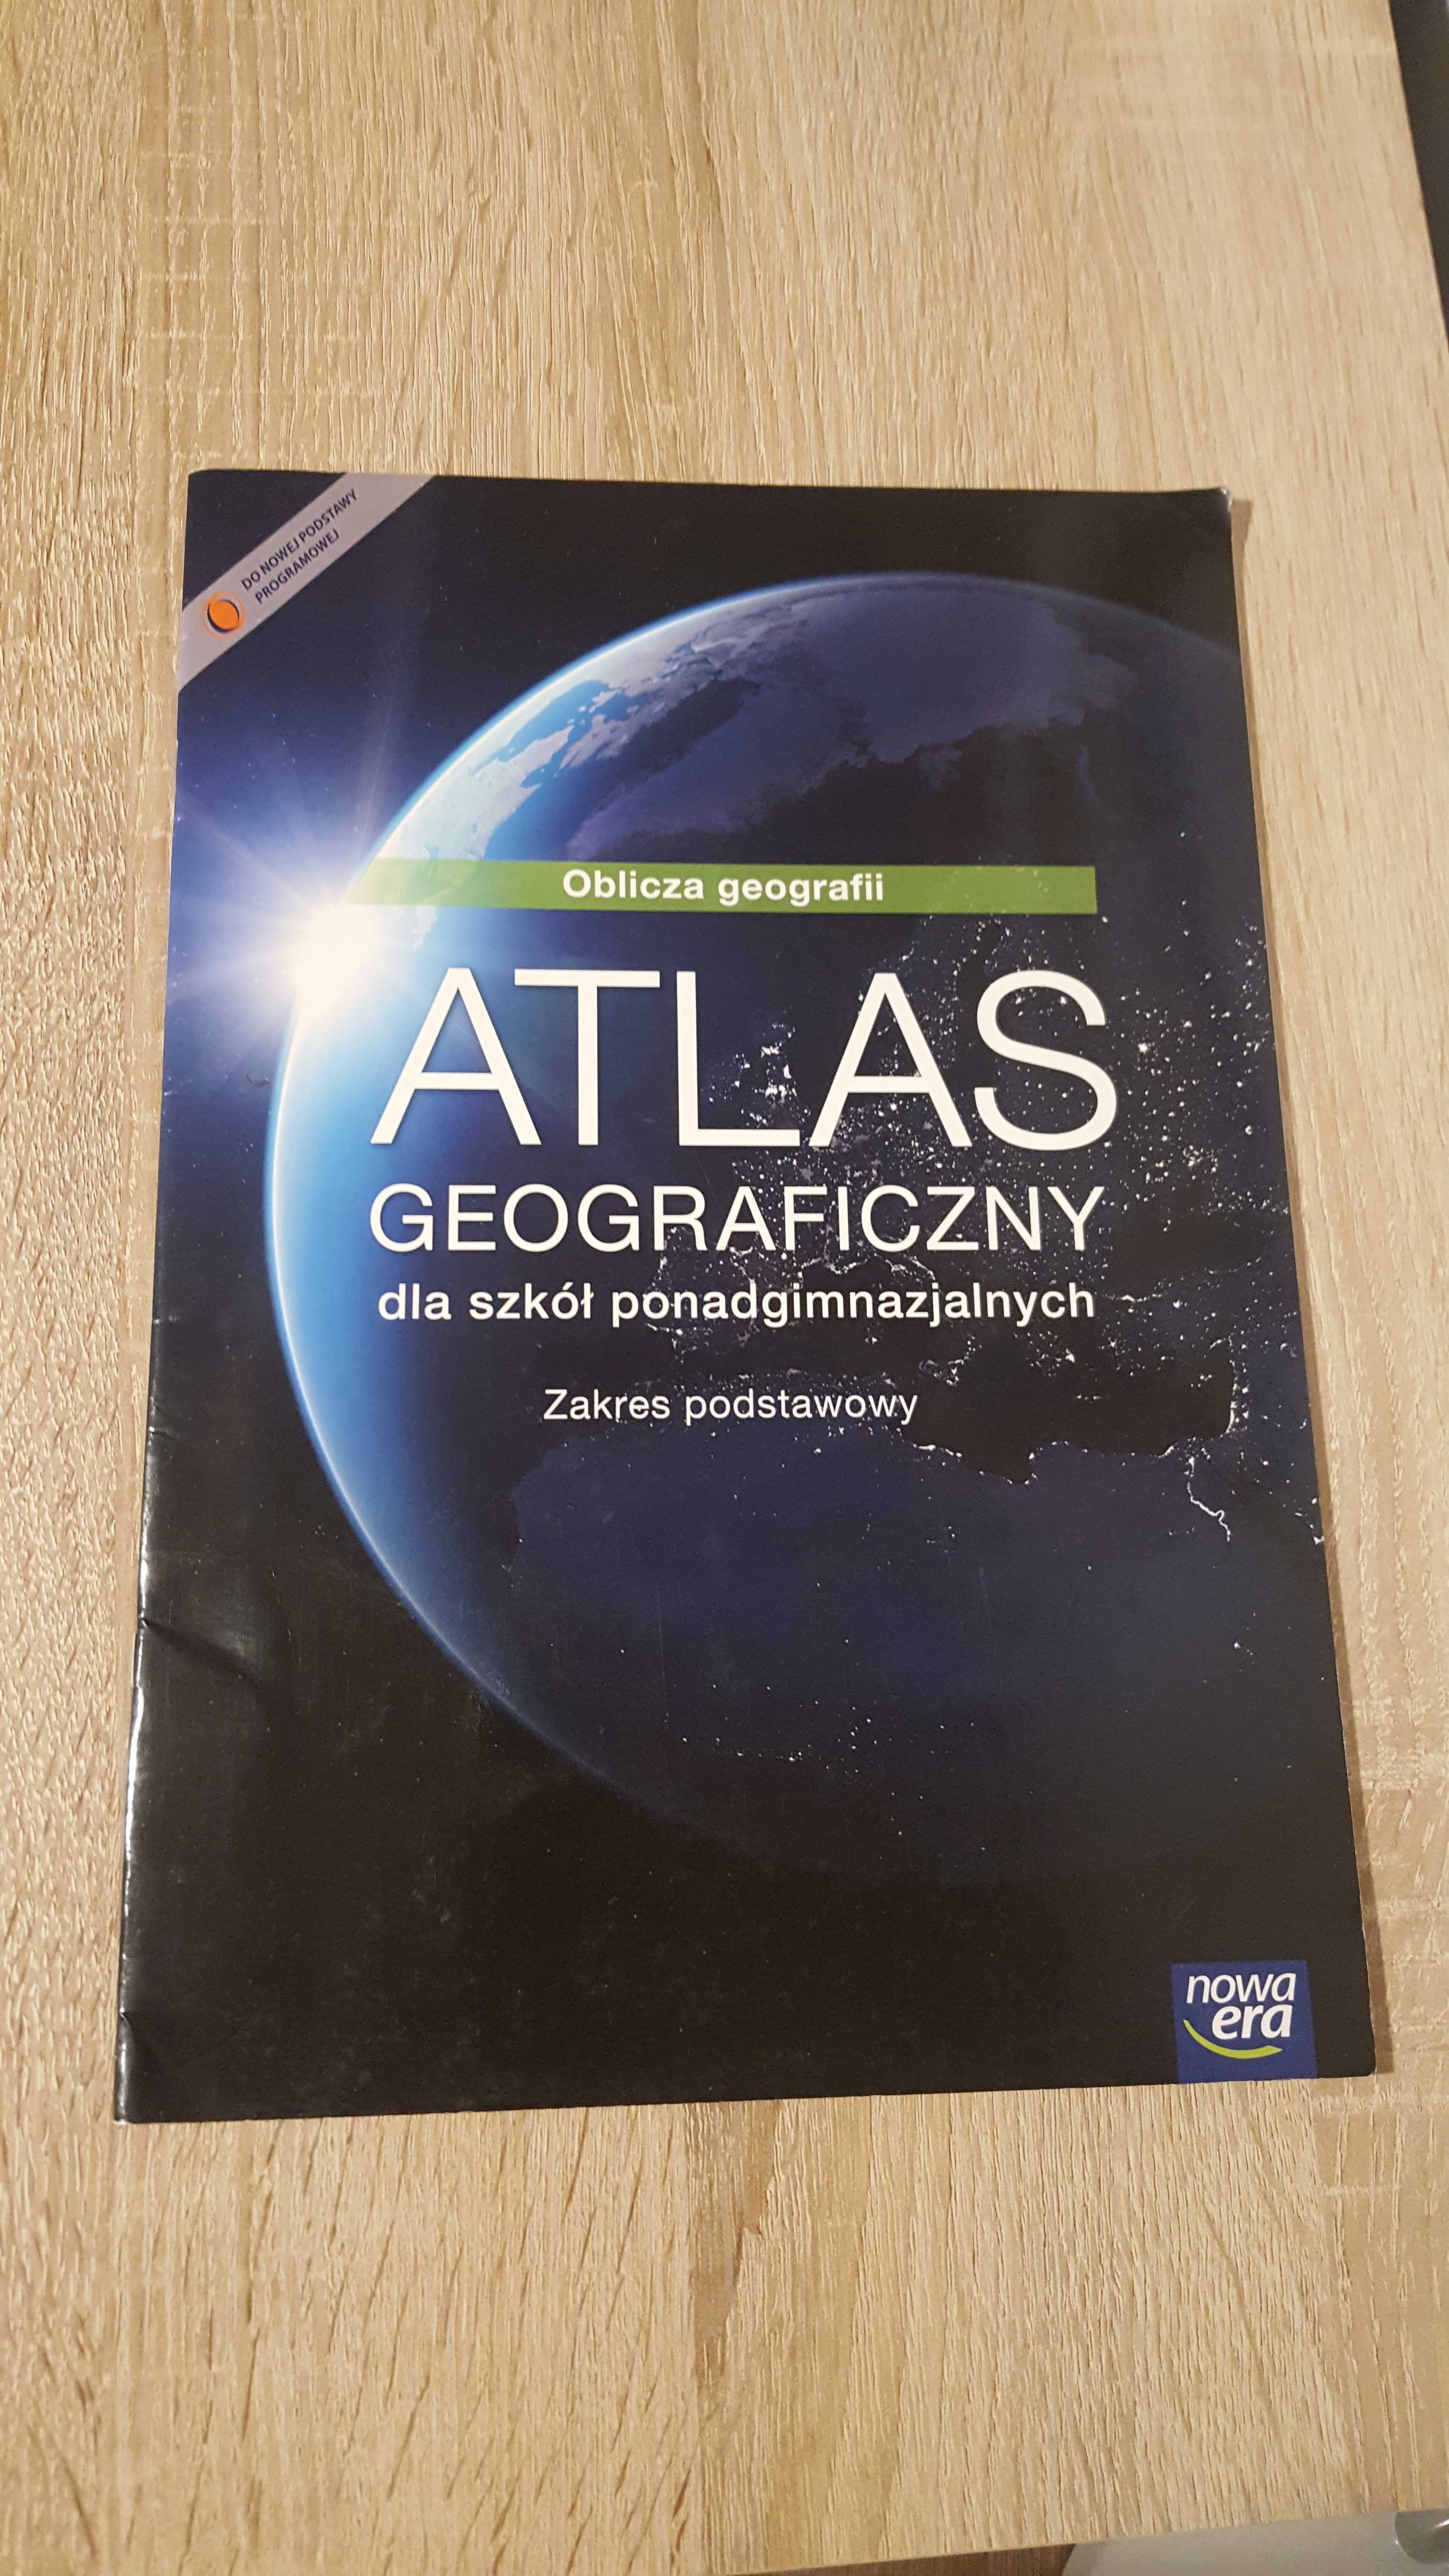 Atlas geograficzny oblicza geografii zakres podstawowy